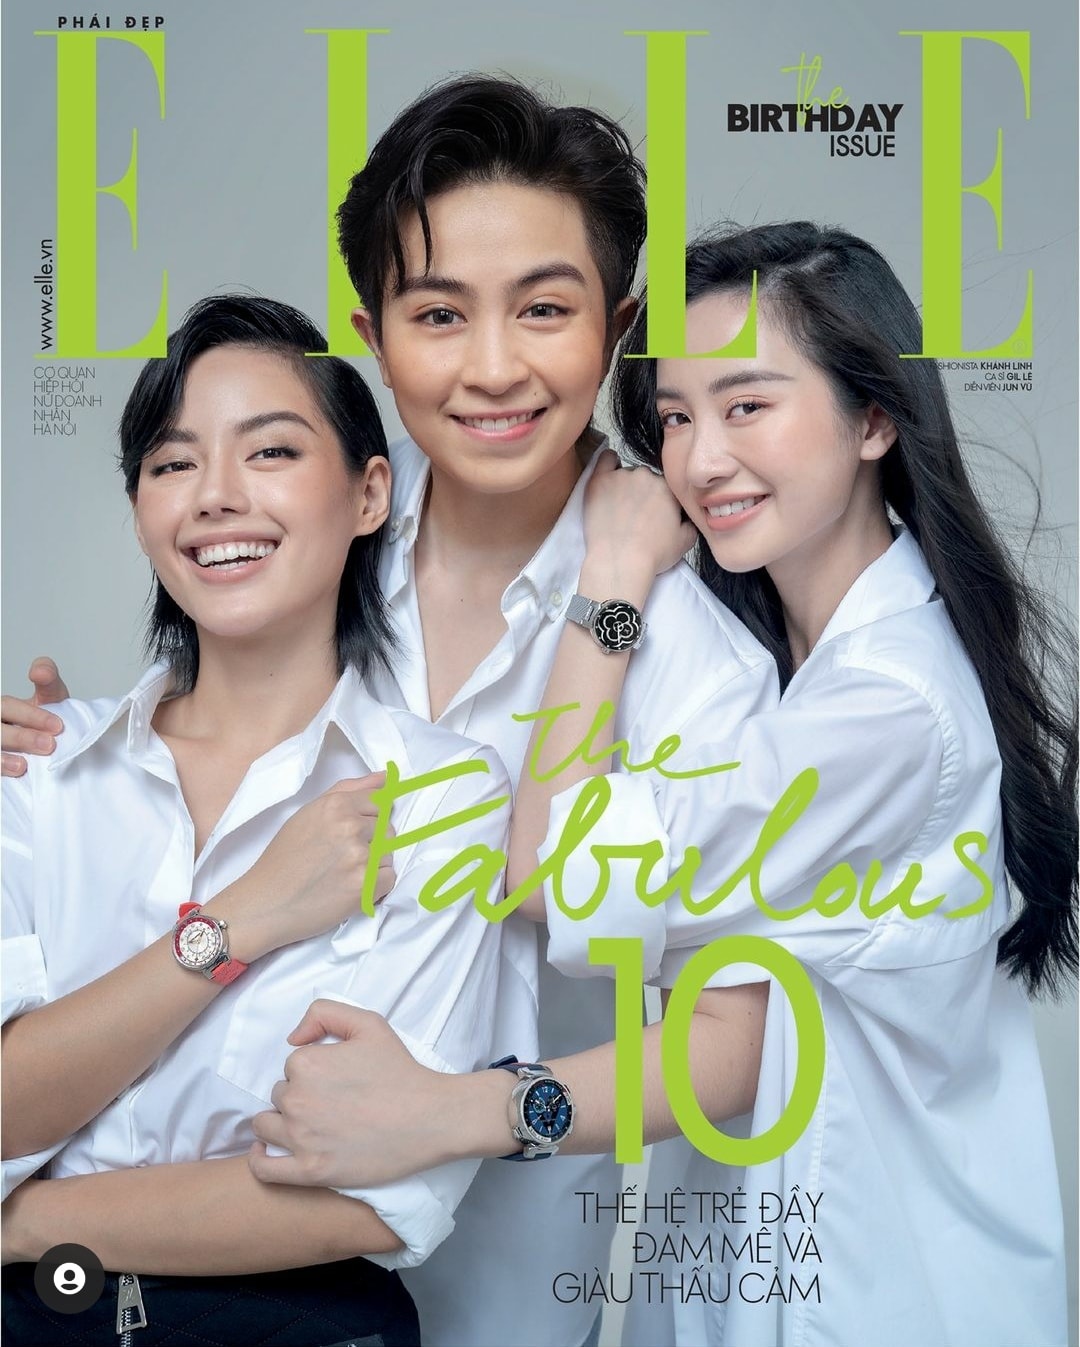 Bìa tạp chí kỷ niệm 10 năm của tạp chí Elle ở Việt Nam bỗng dưng bình thường quá mức. Nhìn thoáng quá người ta tưởng đây là bìa của tạp chí học đường chứ không phải tạp chí thời trang hàng đầu Việt Nam